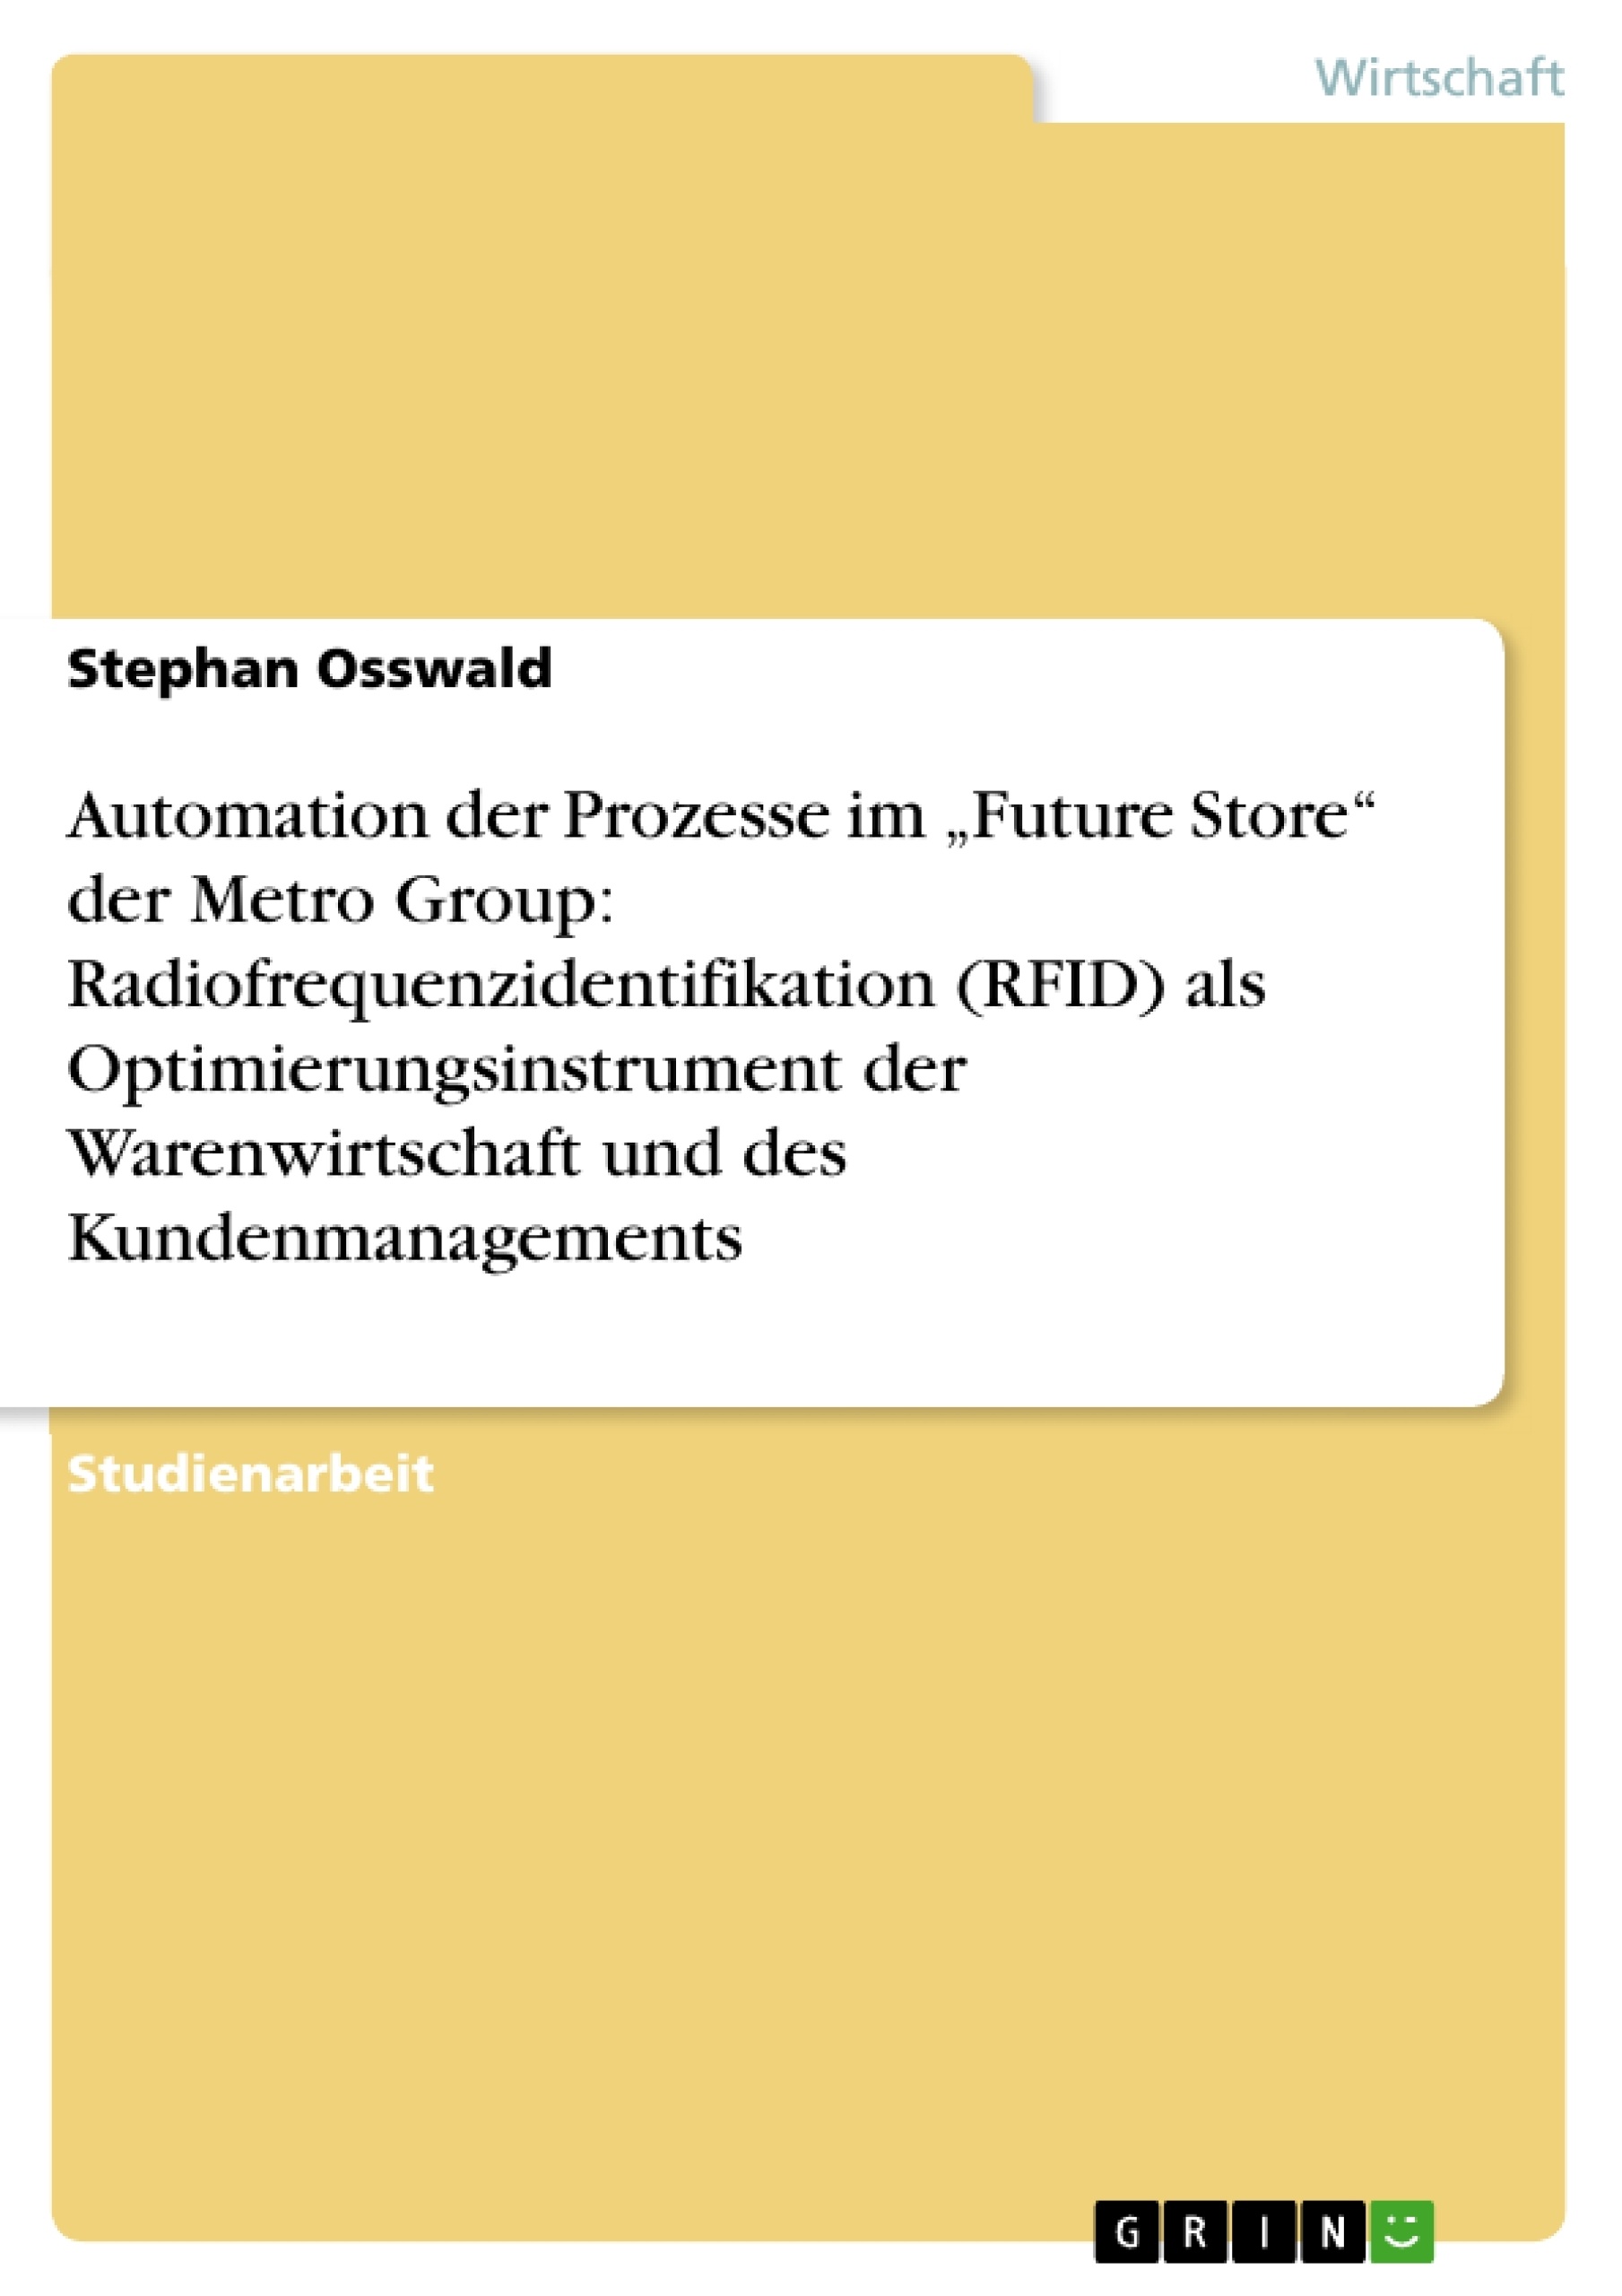 Titre: Automation der Prozesse im „Future Store“ der Metro Group: Radiofrequenzidentifikation (RFID) als Optimierungsinstrument der Warenwirtschaft und des Kundenmanagements